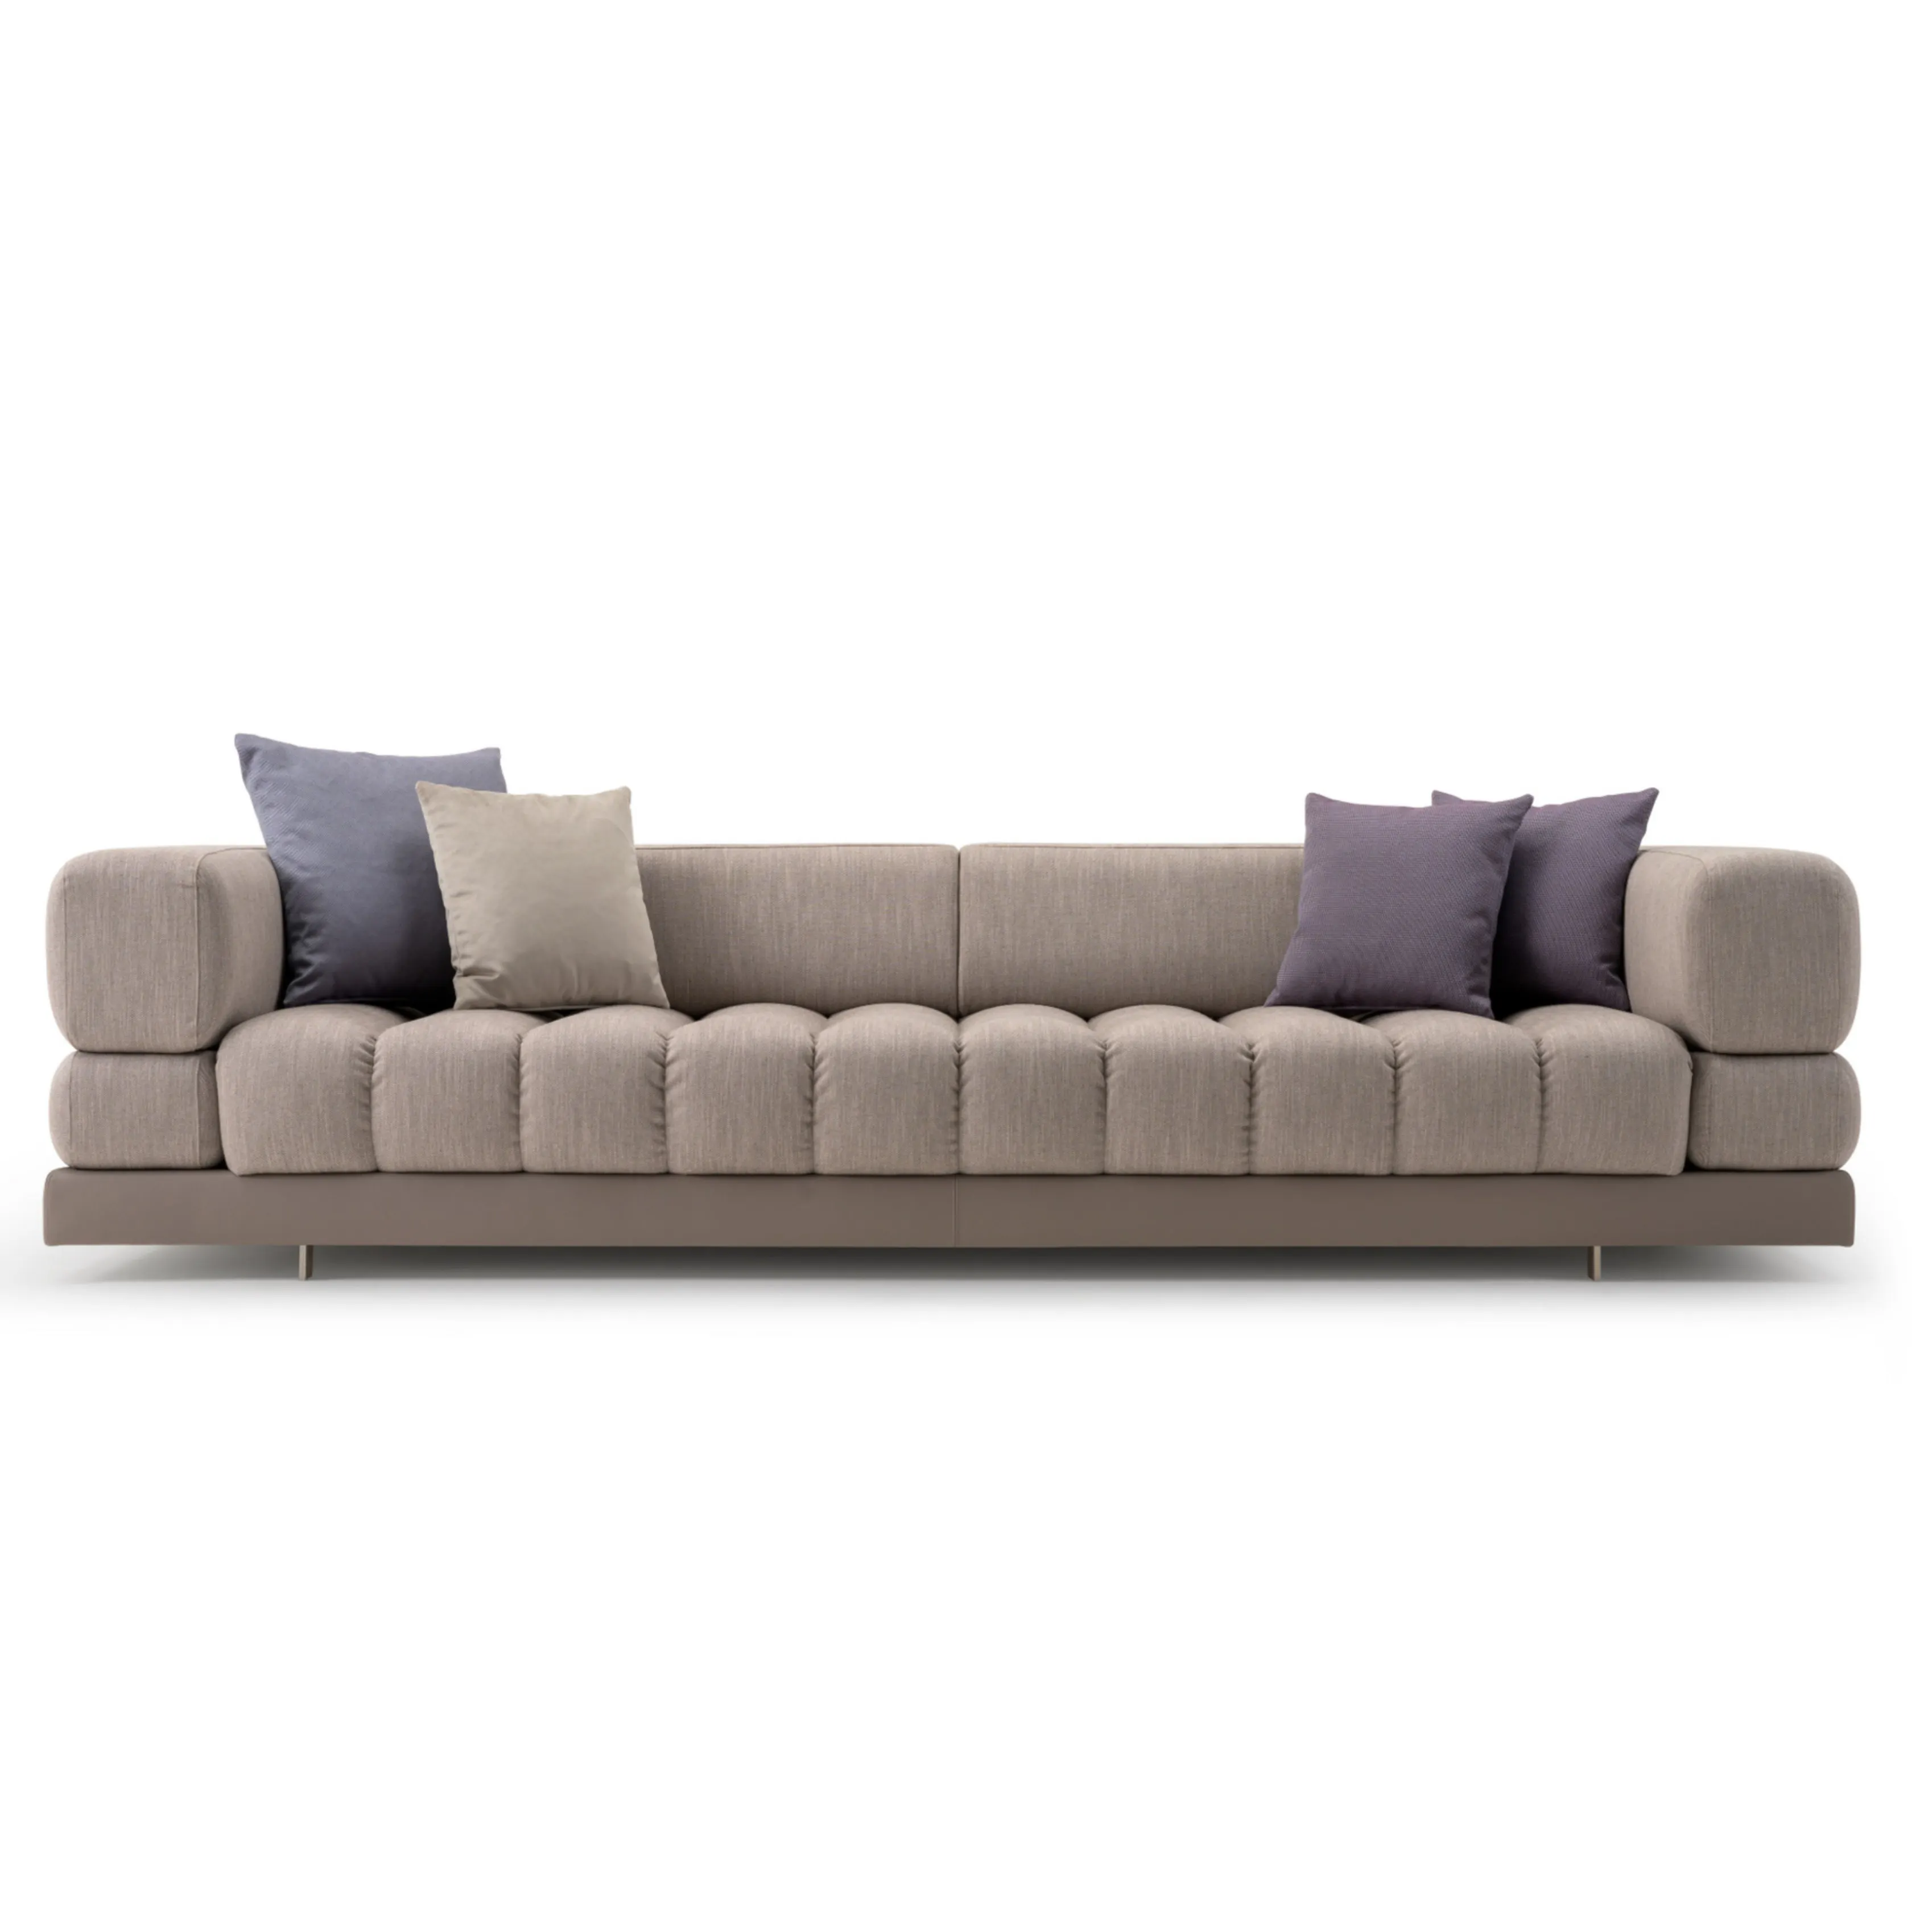 Stile nordico soggiorno divano in tessuto design moderno stile europeo divano divano in tessuto formato loveseat divano modulare in tessuto divano